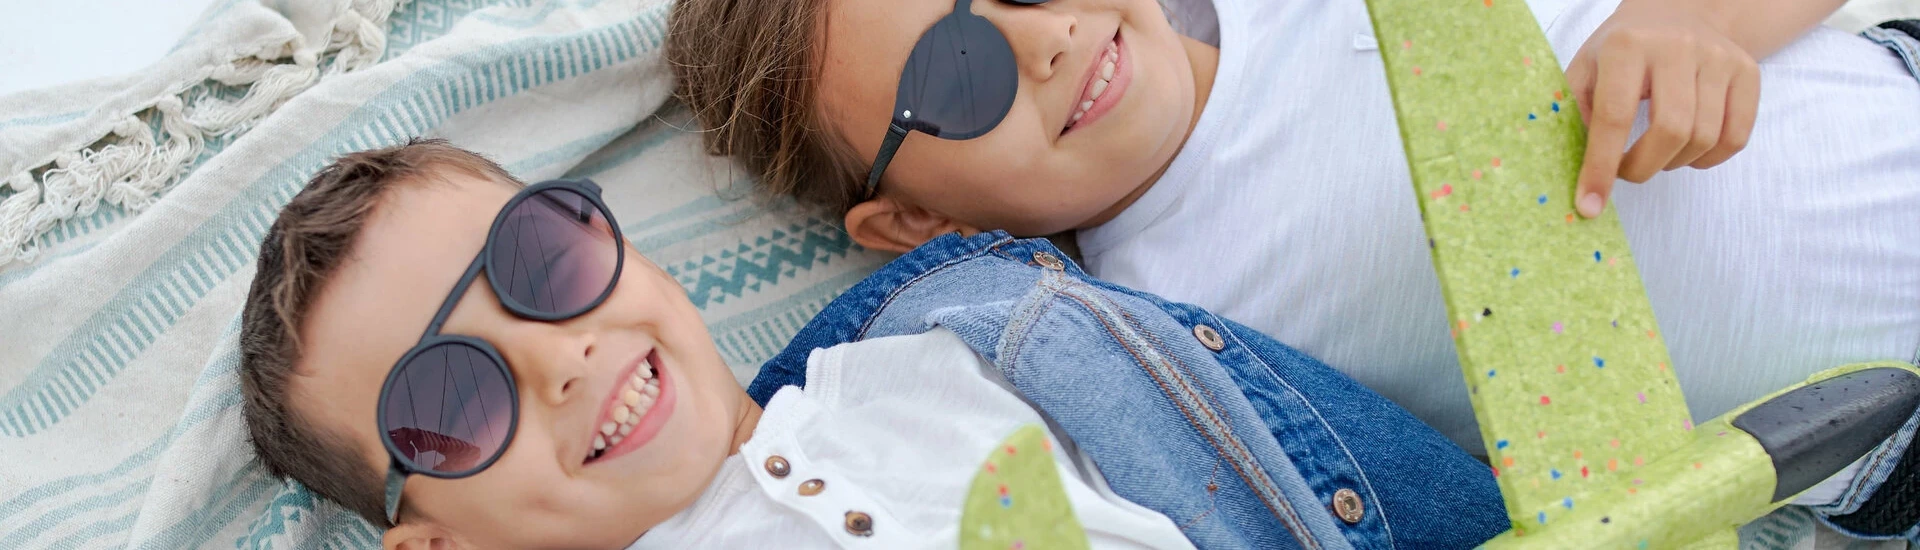 Slnečné okuliare detské - Očná optika Optik Morvay Trnava, Sereď, Senec